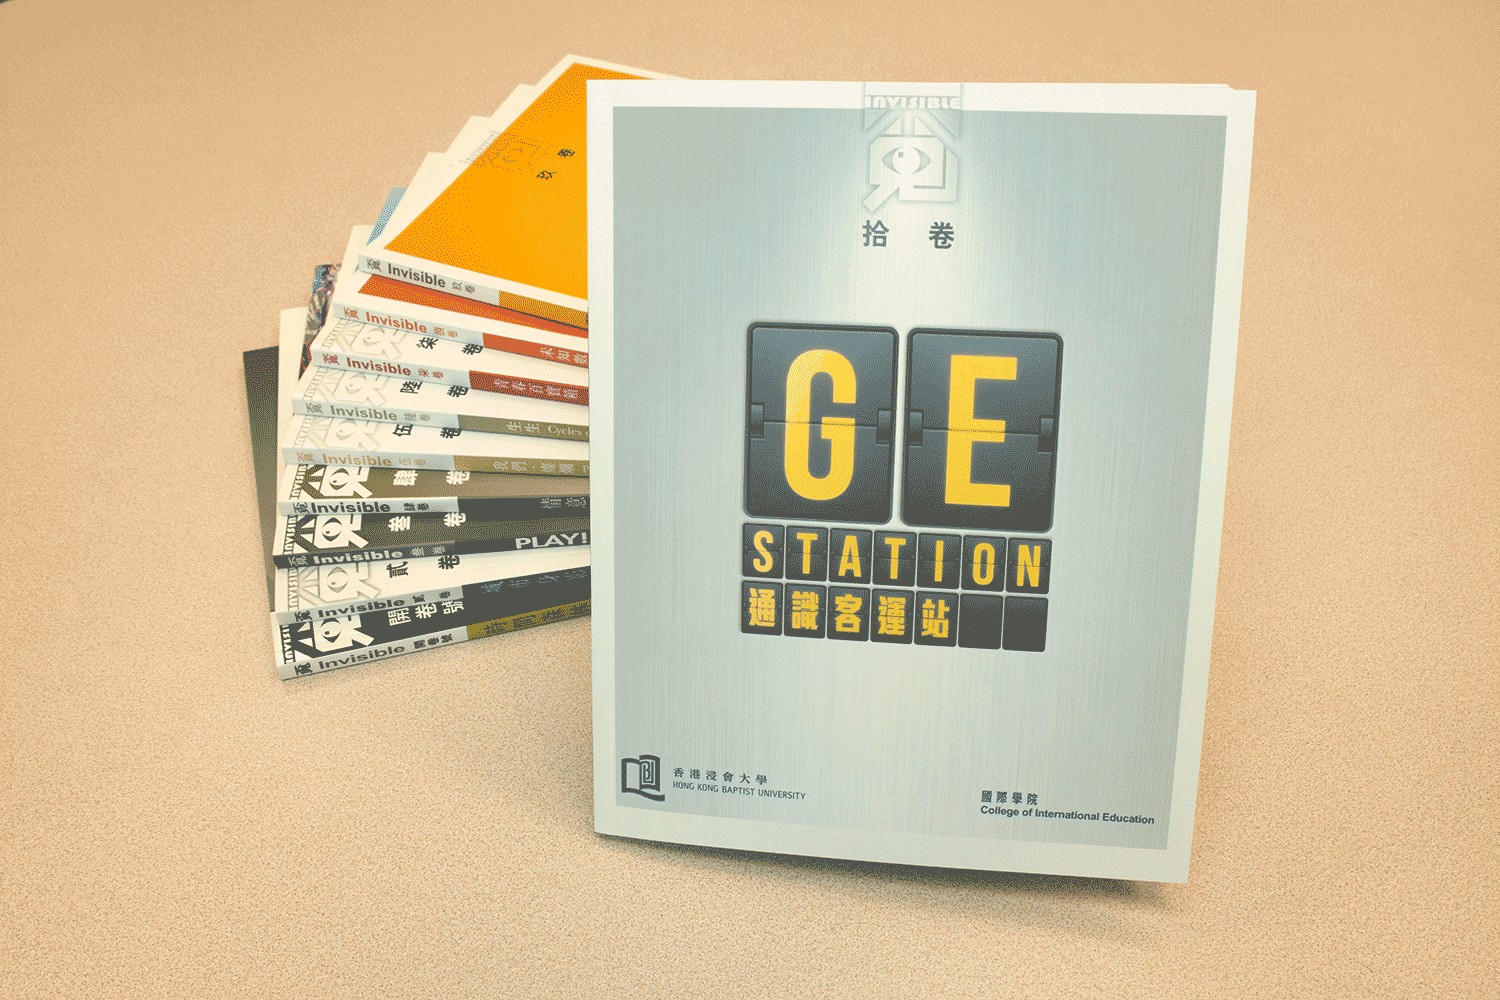  浸大国际学院刊物《覔Invisible》第十卷《通识客运站GE Station》现已出版。